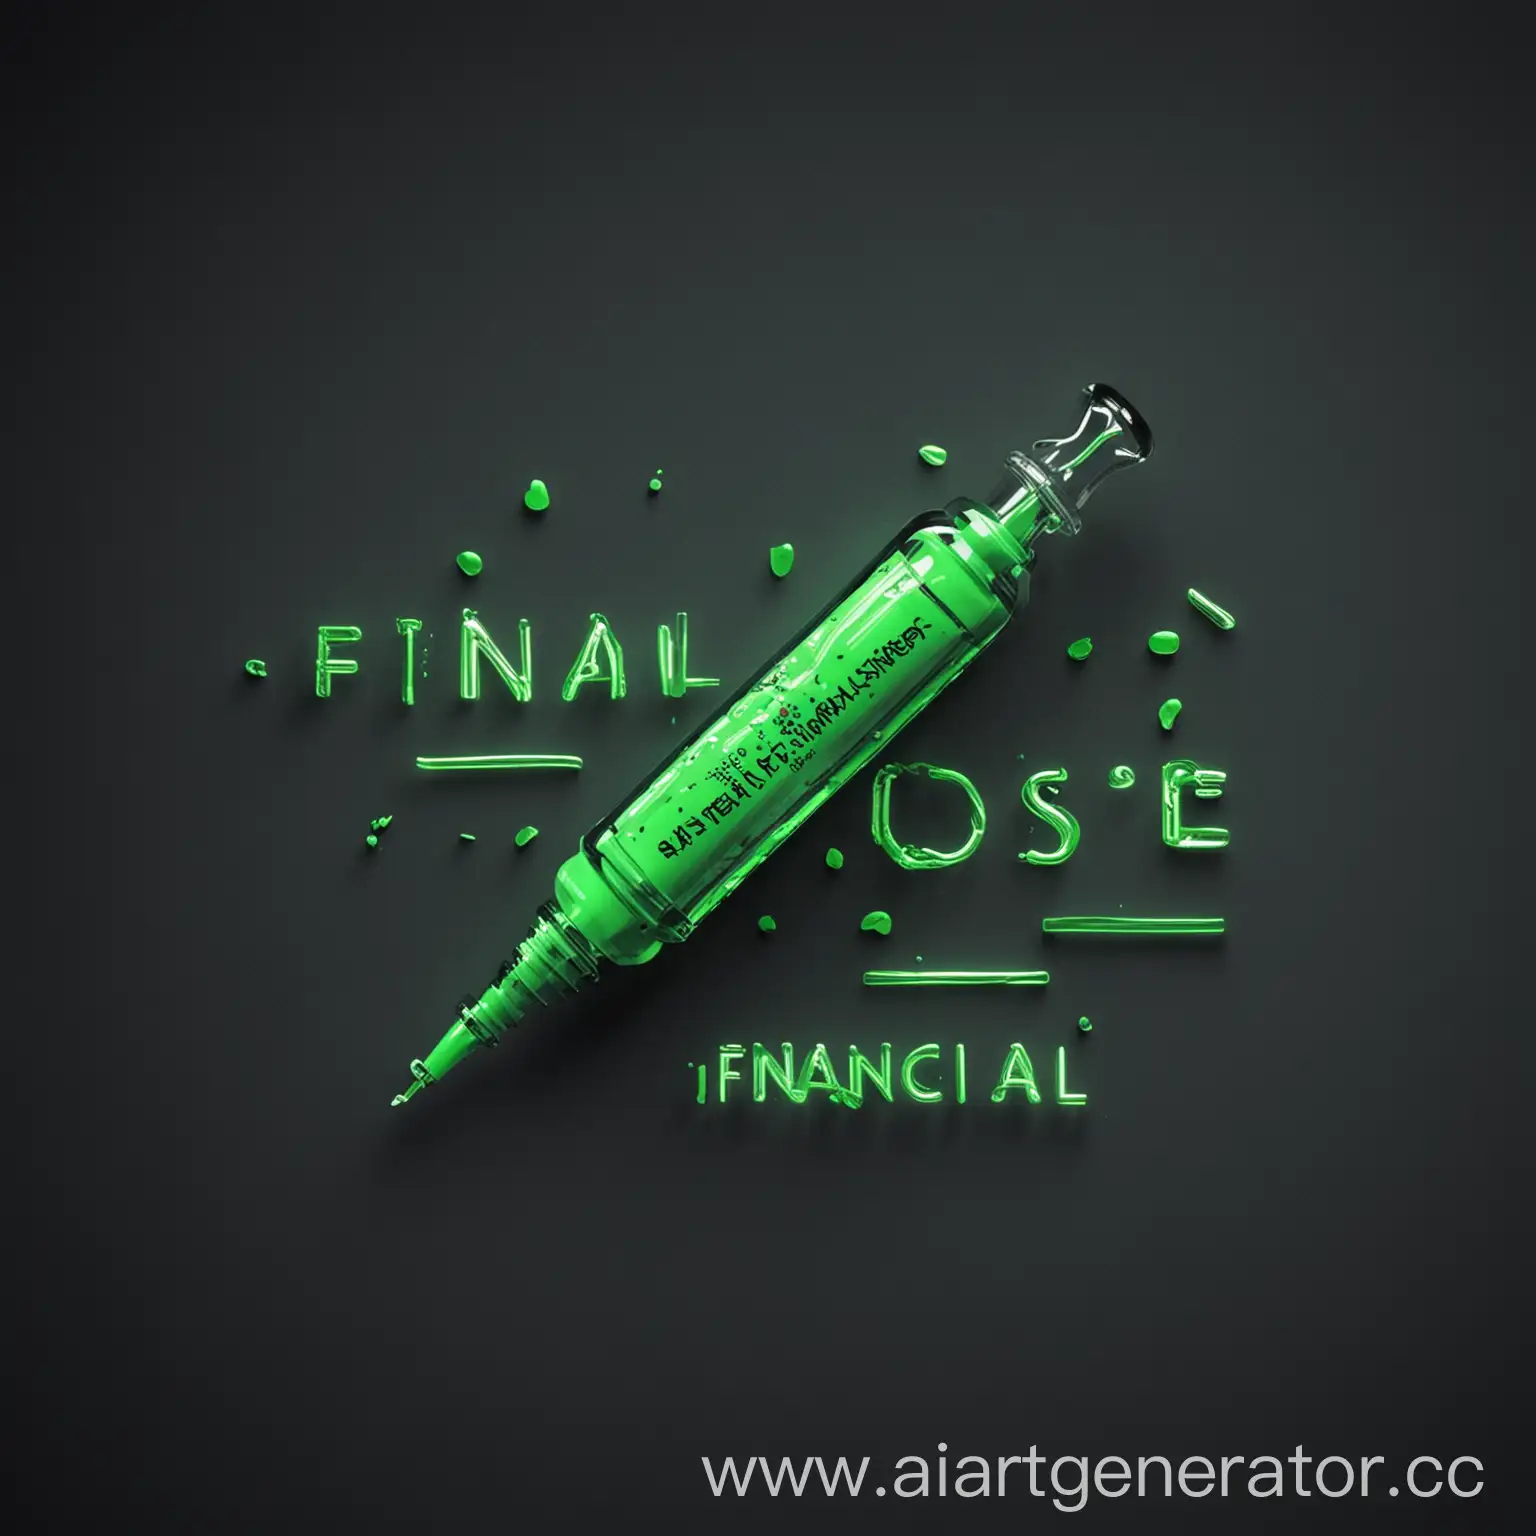 Аватарка для канала по заработку под названием "финансовая доза" в кислотно зеленом цвете с использованием шприца